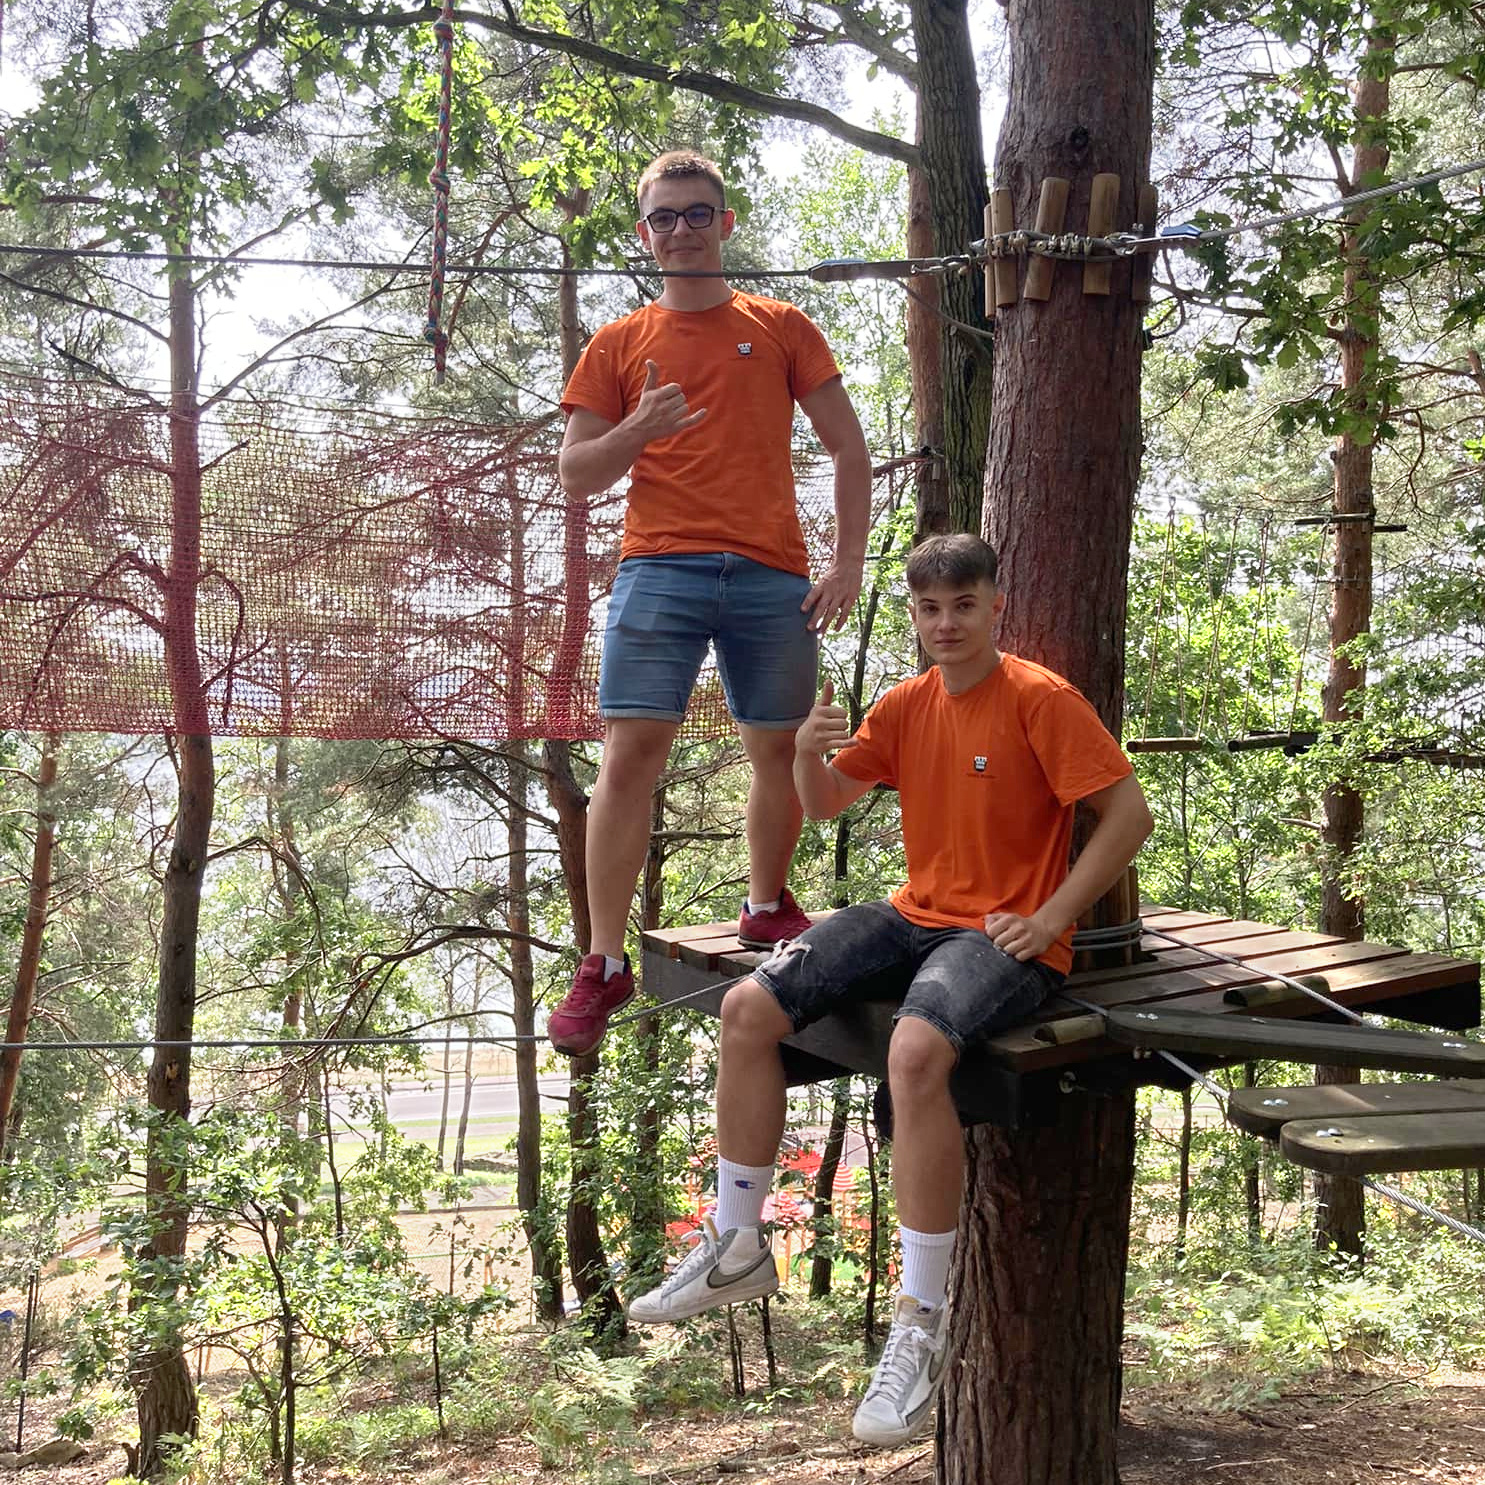 Dwaj chłopcy w parku linowym obrani w pomarańczowe koszulki. Są to operatorzy parku linowego.